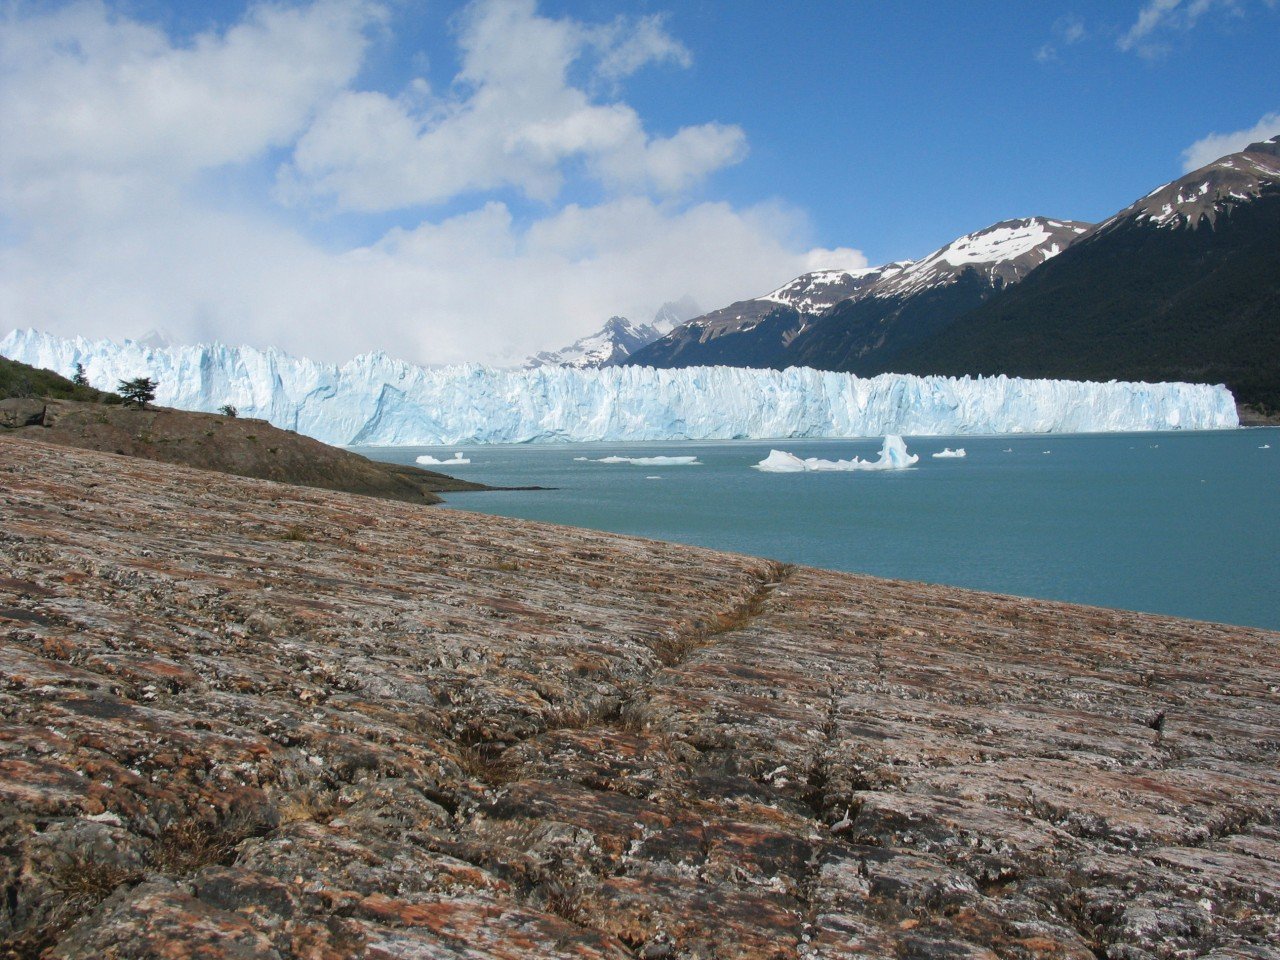 Day17 : Los Glaciares National Park